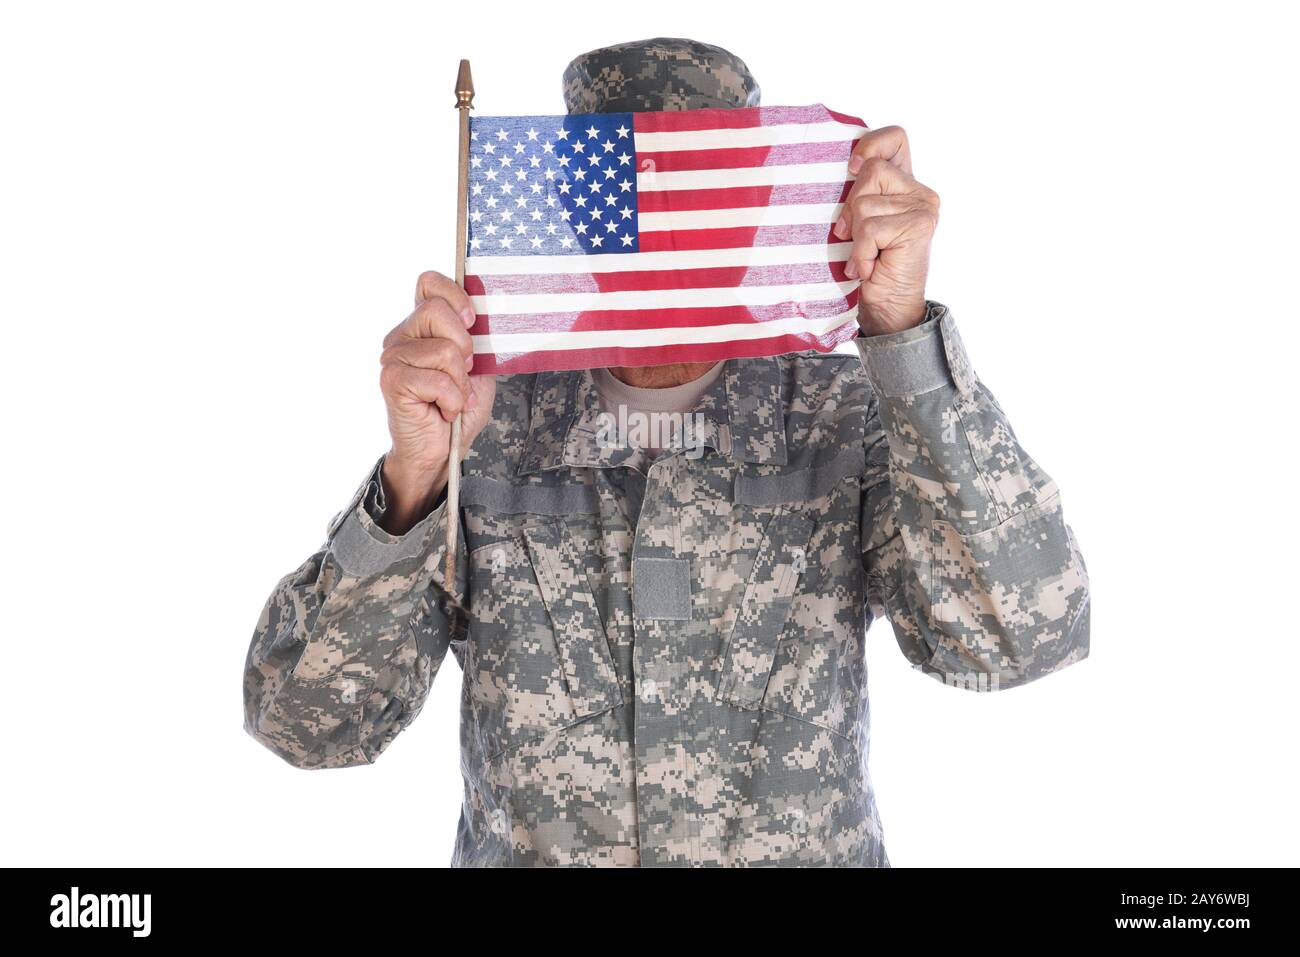 Concept De Patriotisme. Un soldat en camouflage futigues tenant un drapeau américain devant son visage. Banque D'Images